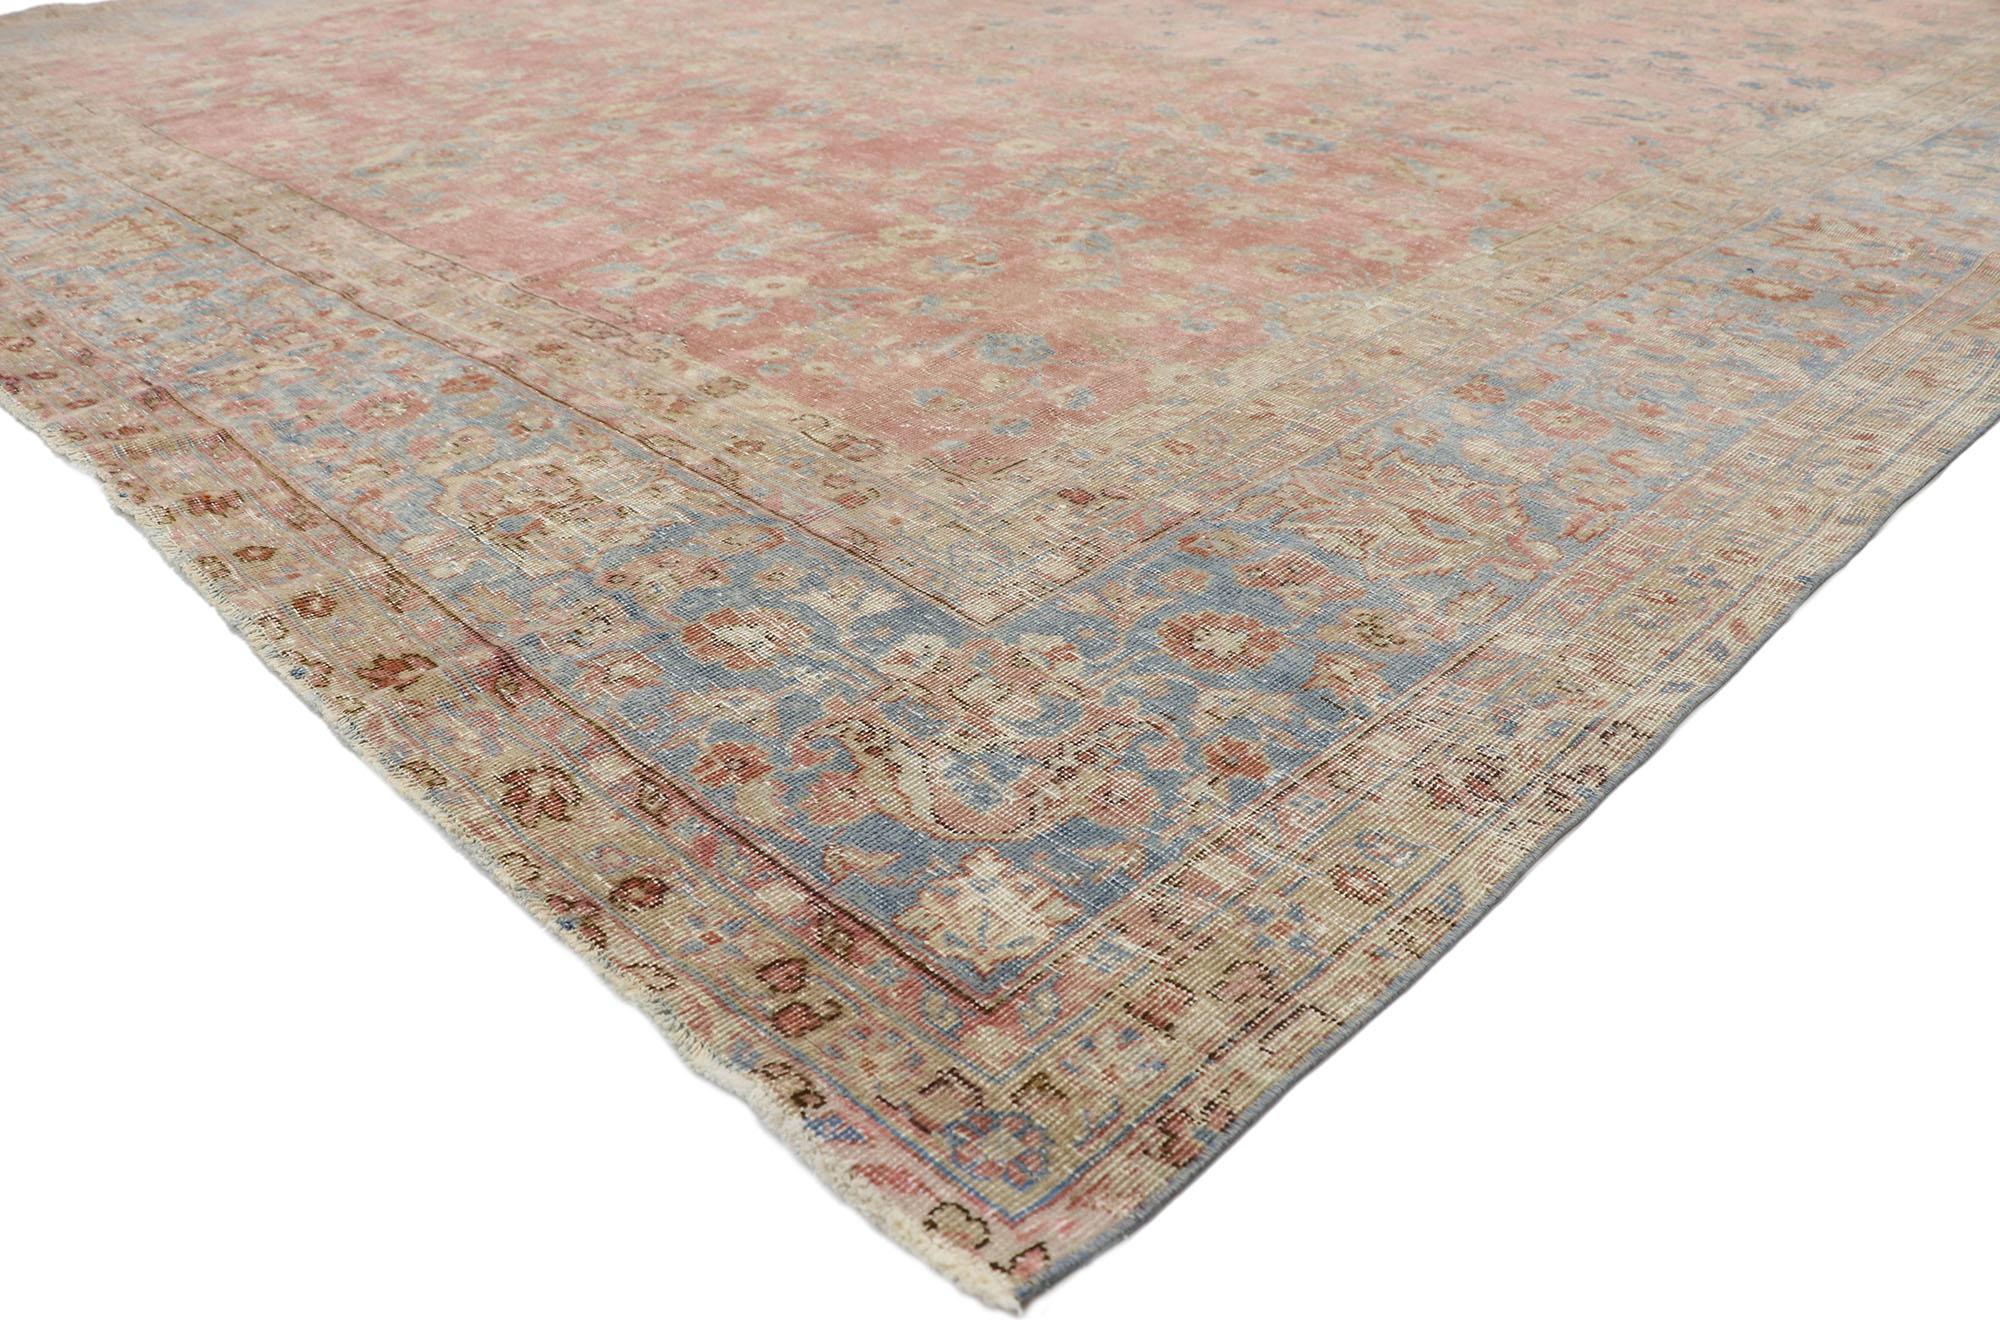 76756 Antiker indischer Teppich, 11'05 x 16'01.
Regencycore trifft auf rustikale Sensibilität in diesem handgeknüpften, antiken indischen Wollteppich. Die hochdekorativen Details und die Pastellfarben, die in dieses Stück eingewebt sind, ergeben